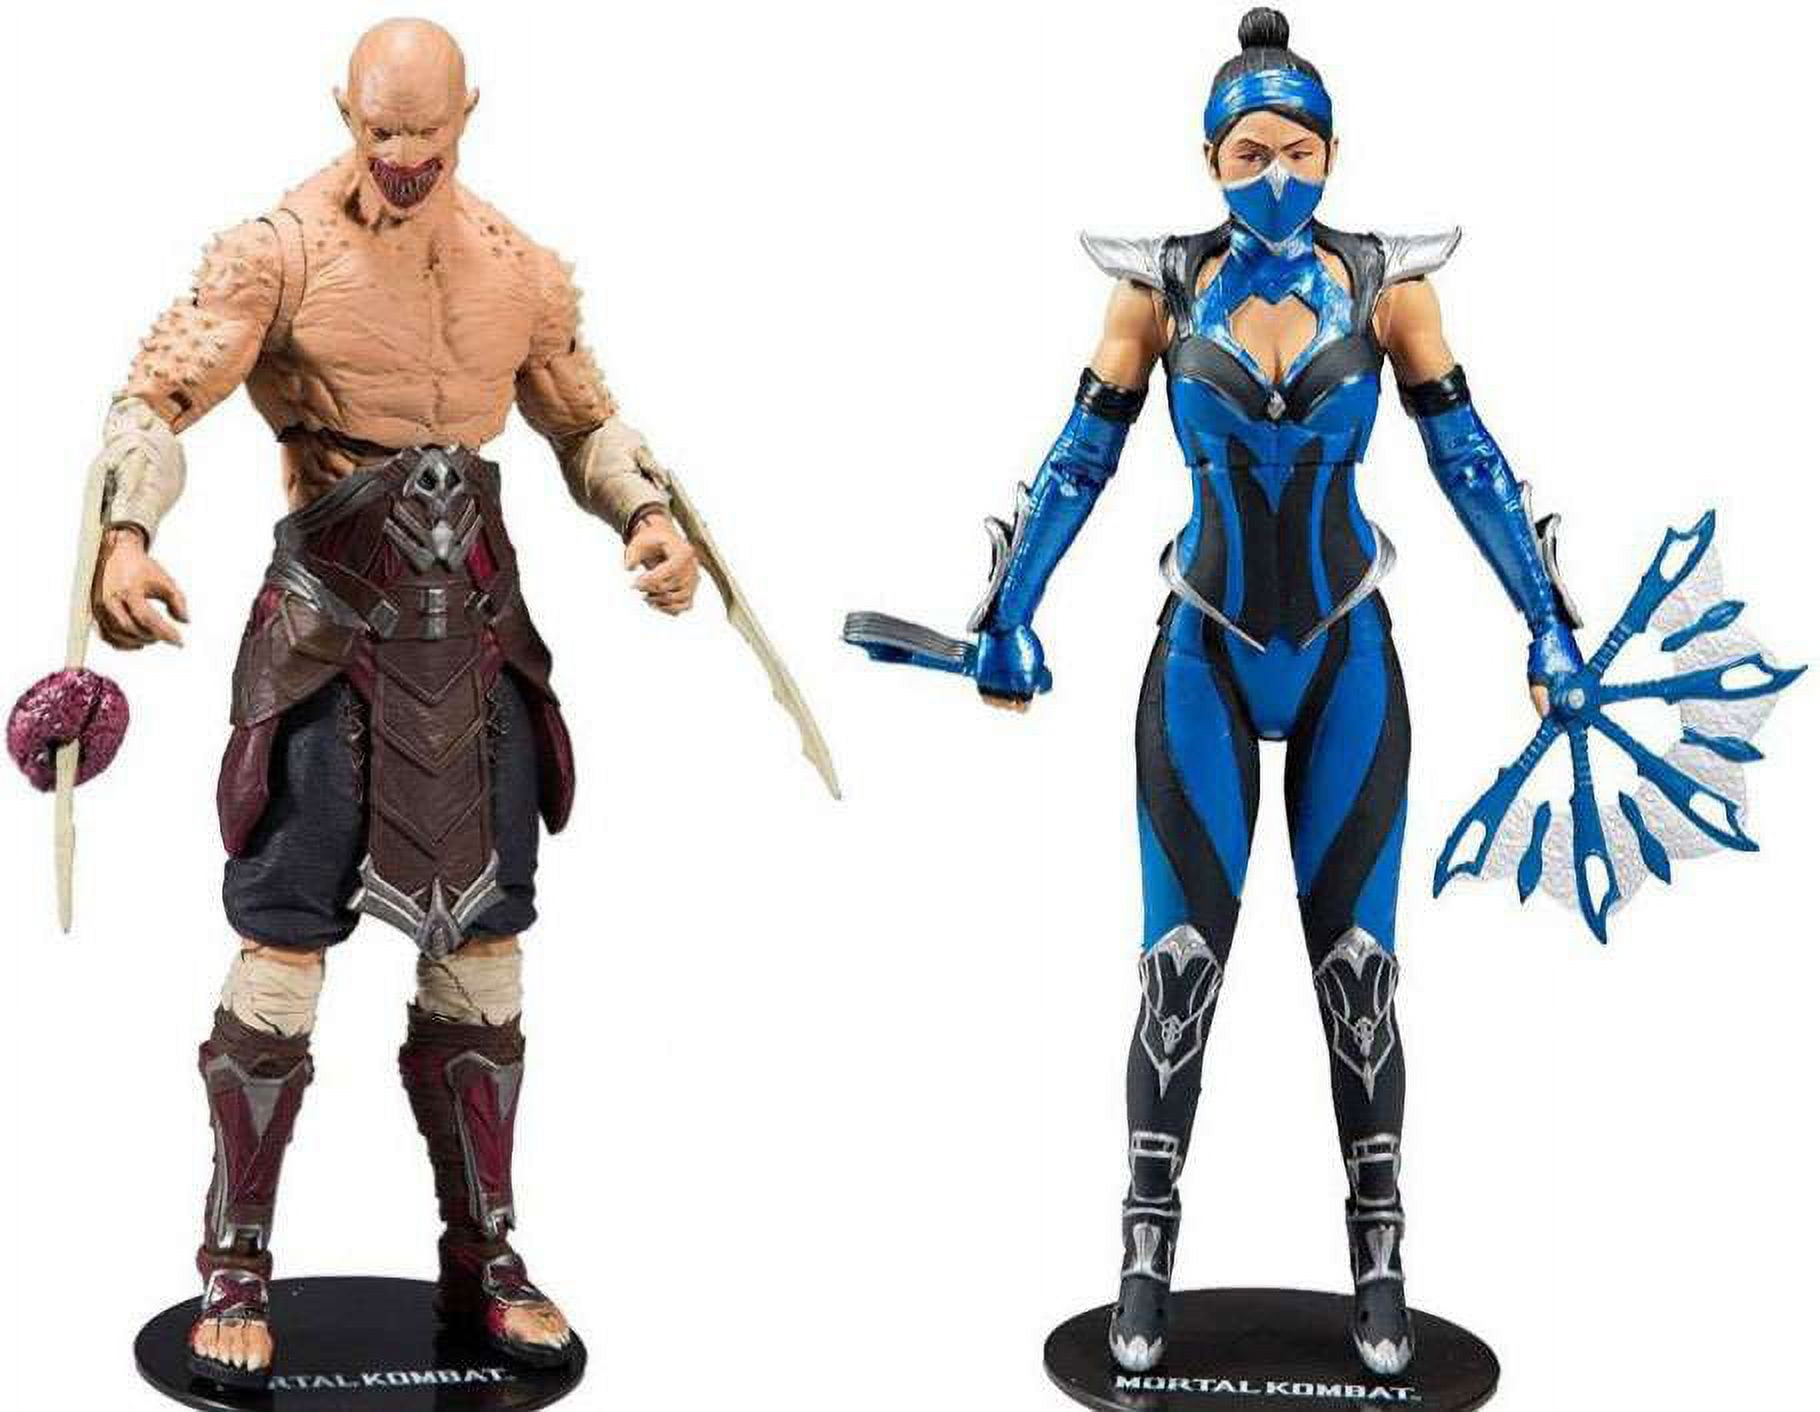 Mortal Kombat 11 - Kitana and Baraka Figures by McFarlane Toys